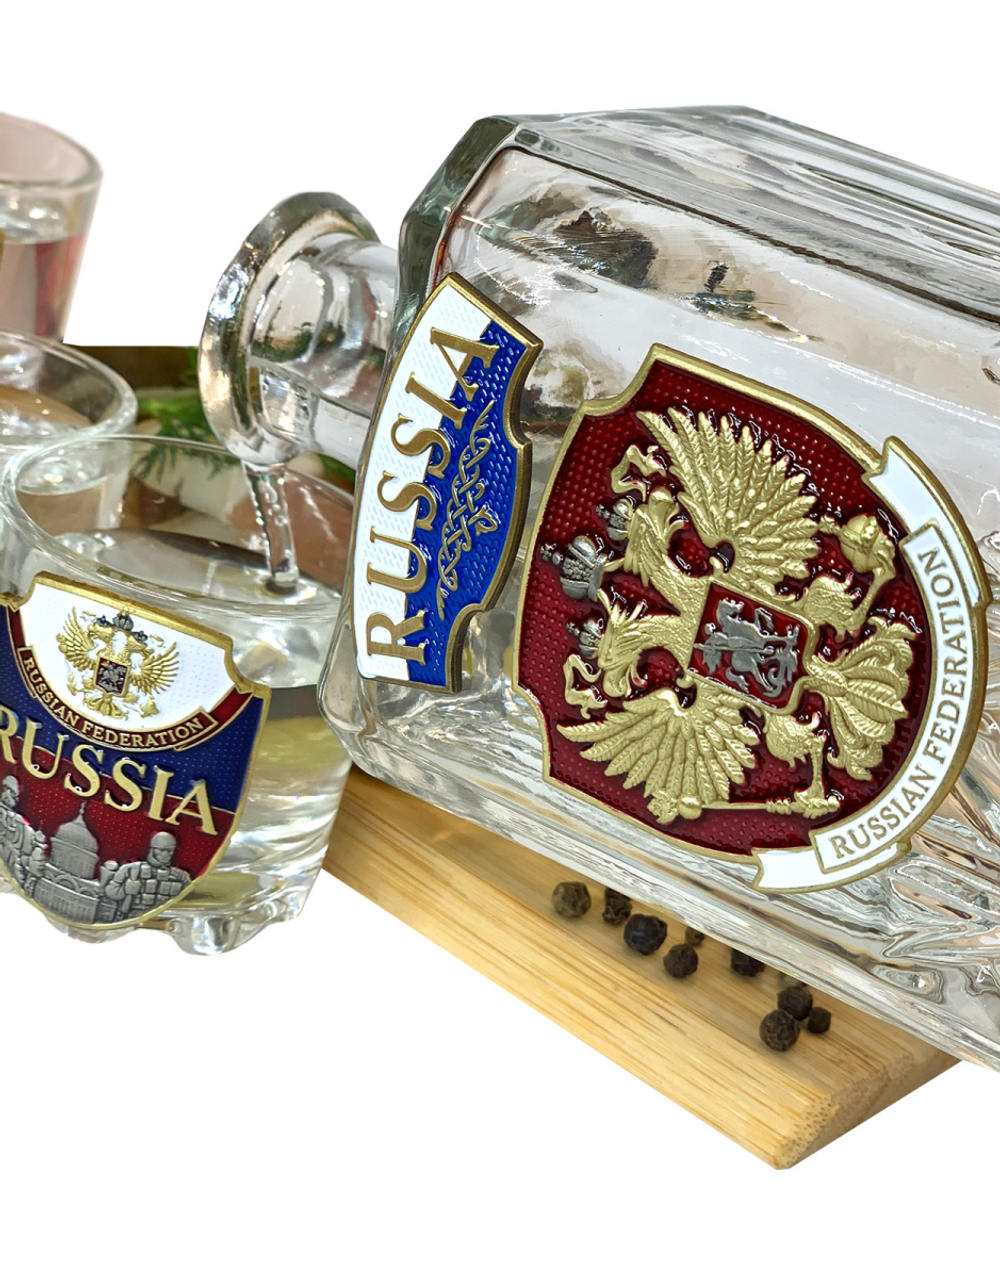 Набор для крепких напитков «Россия» графин и 6 стопок